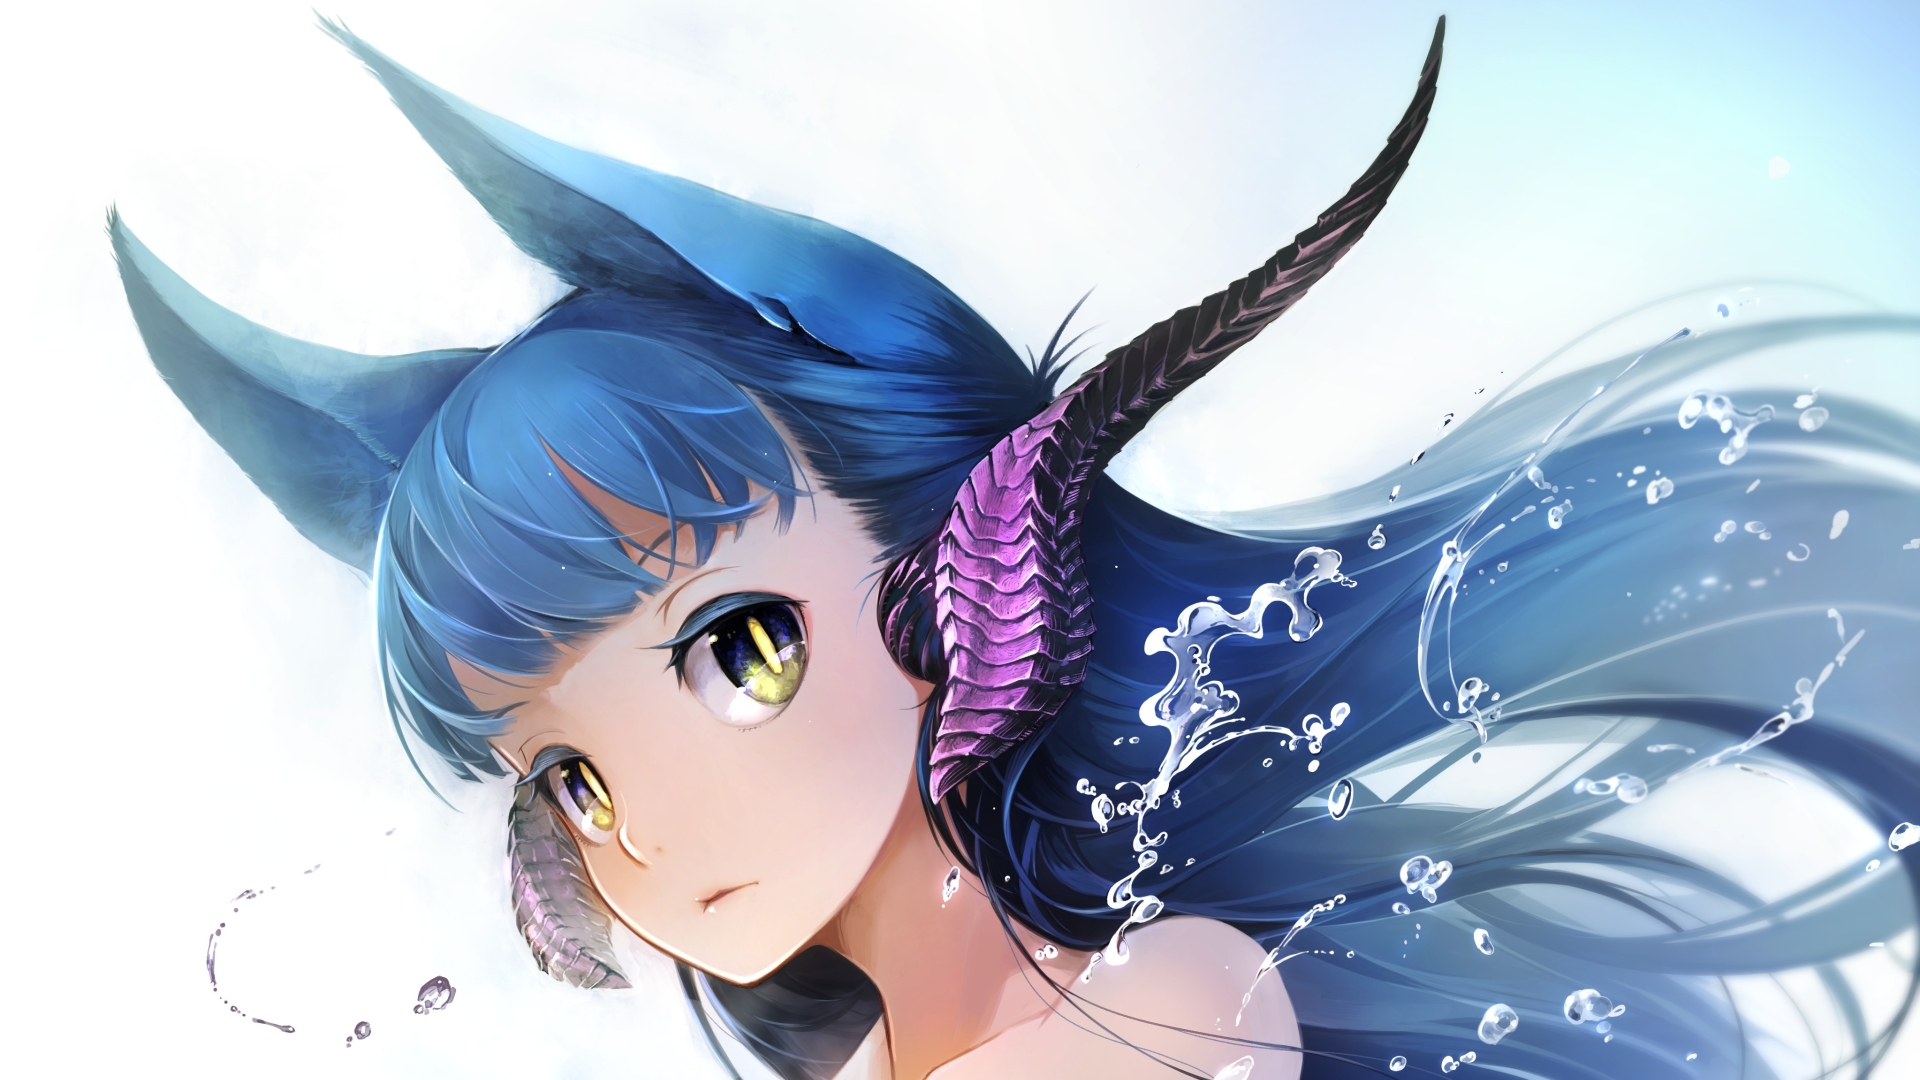 1920x1080 Anime Girl Ears 1080p Laptop Full Hd Wallpaper Hd Anime 4k Wallpapers Images